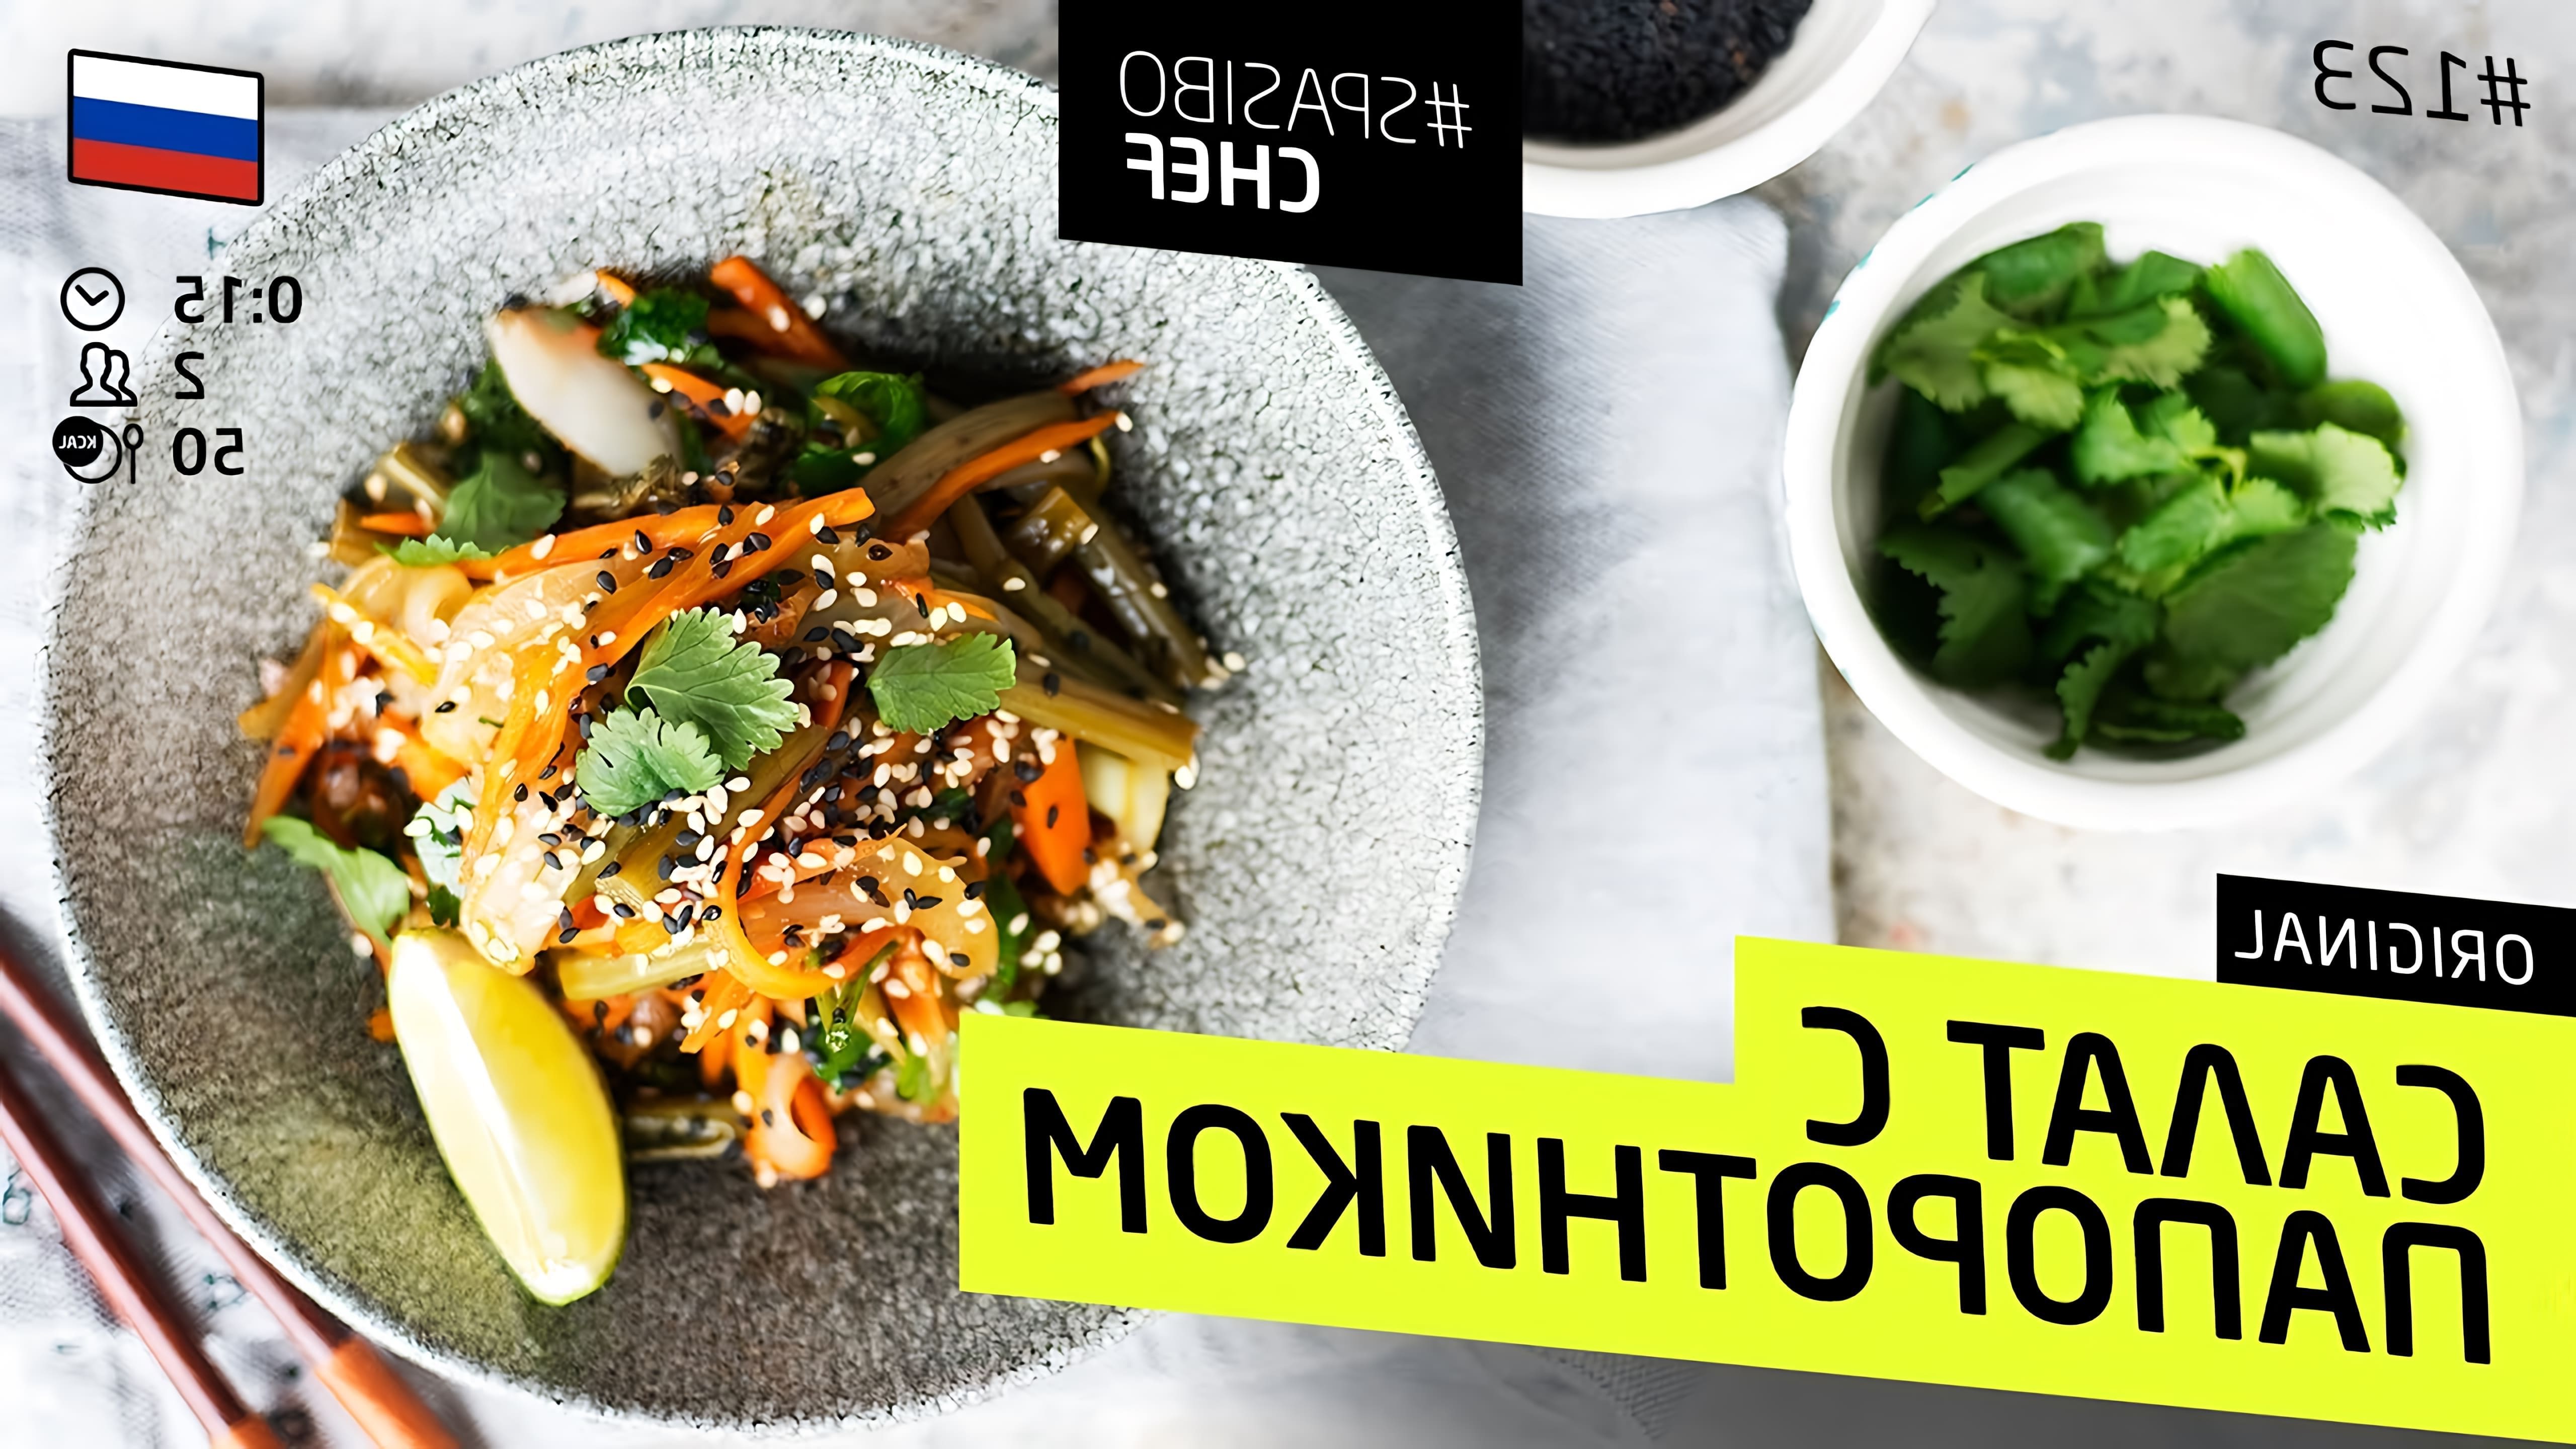 В этом видео шеф-повар Илья Лазерсон рассказывает о салате с папоротником, который является популярным блюдом для корейцев и веганов